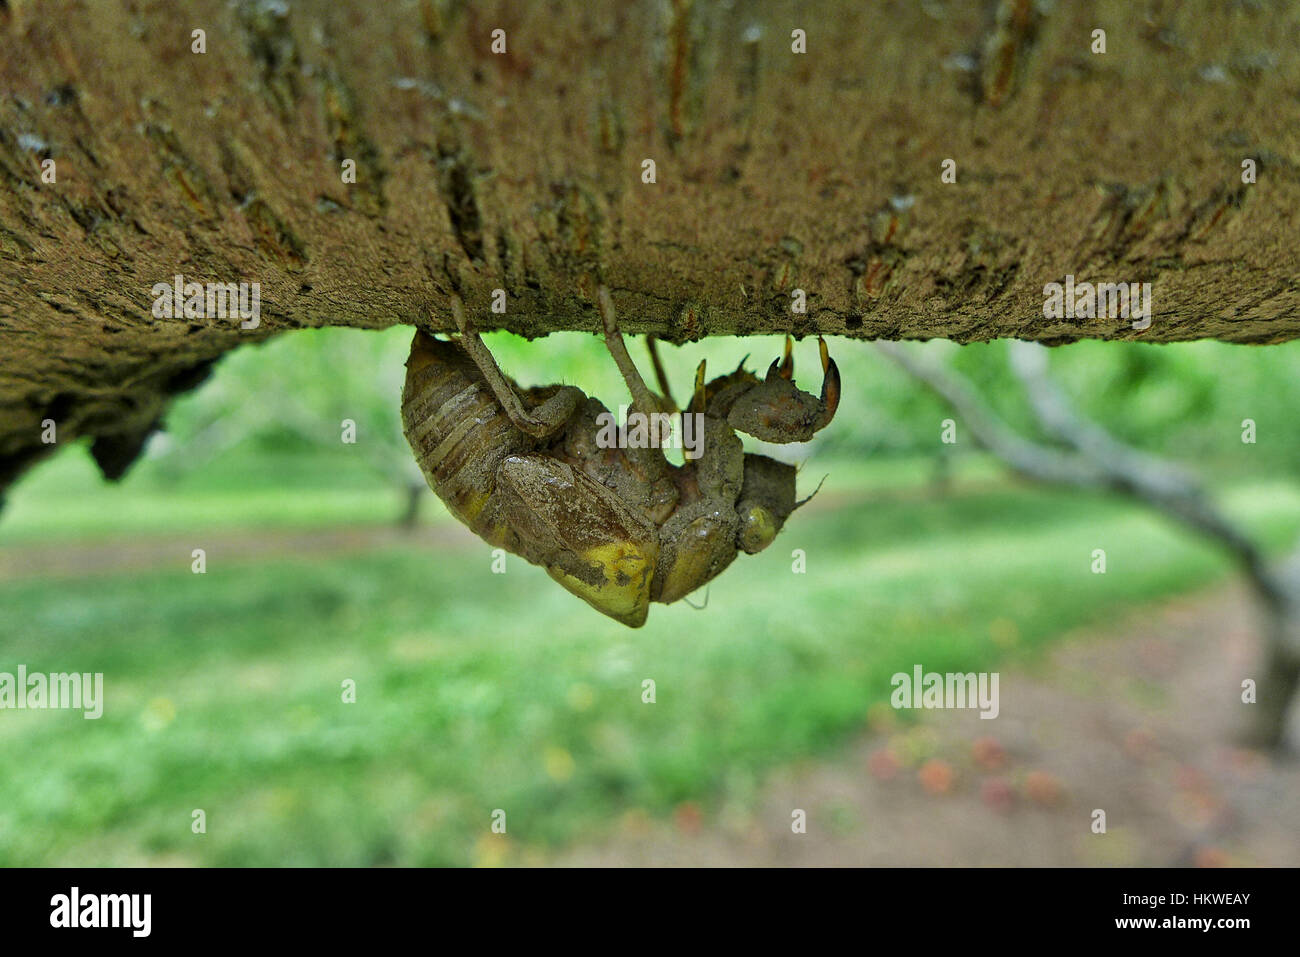 Die molted Haut einer Zikade Insekt hängen an Zweig in einem Obstgarten Stockfoto